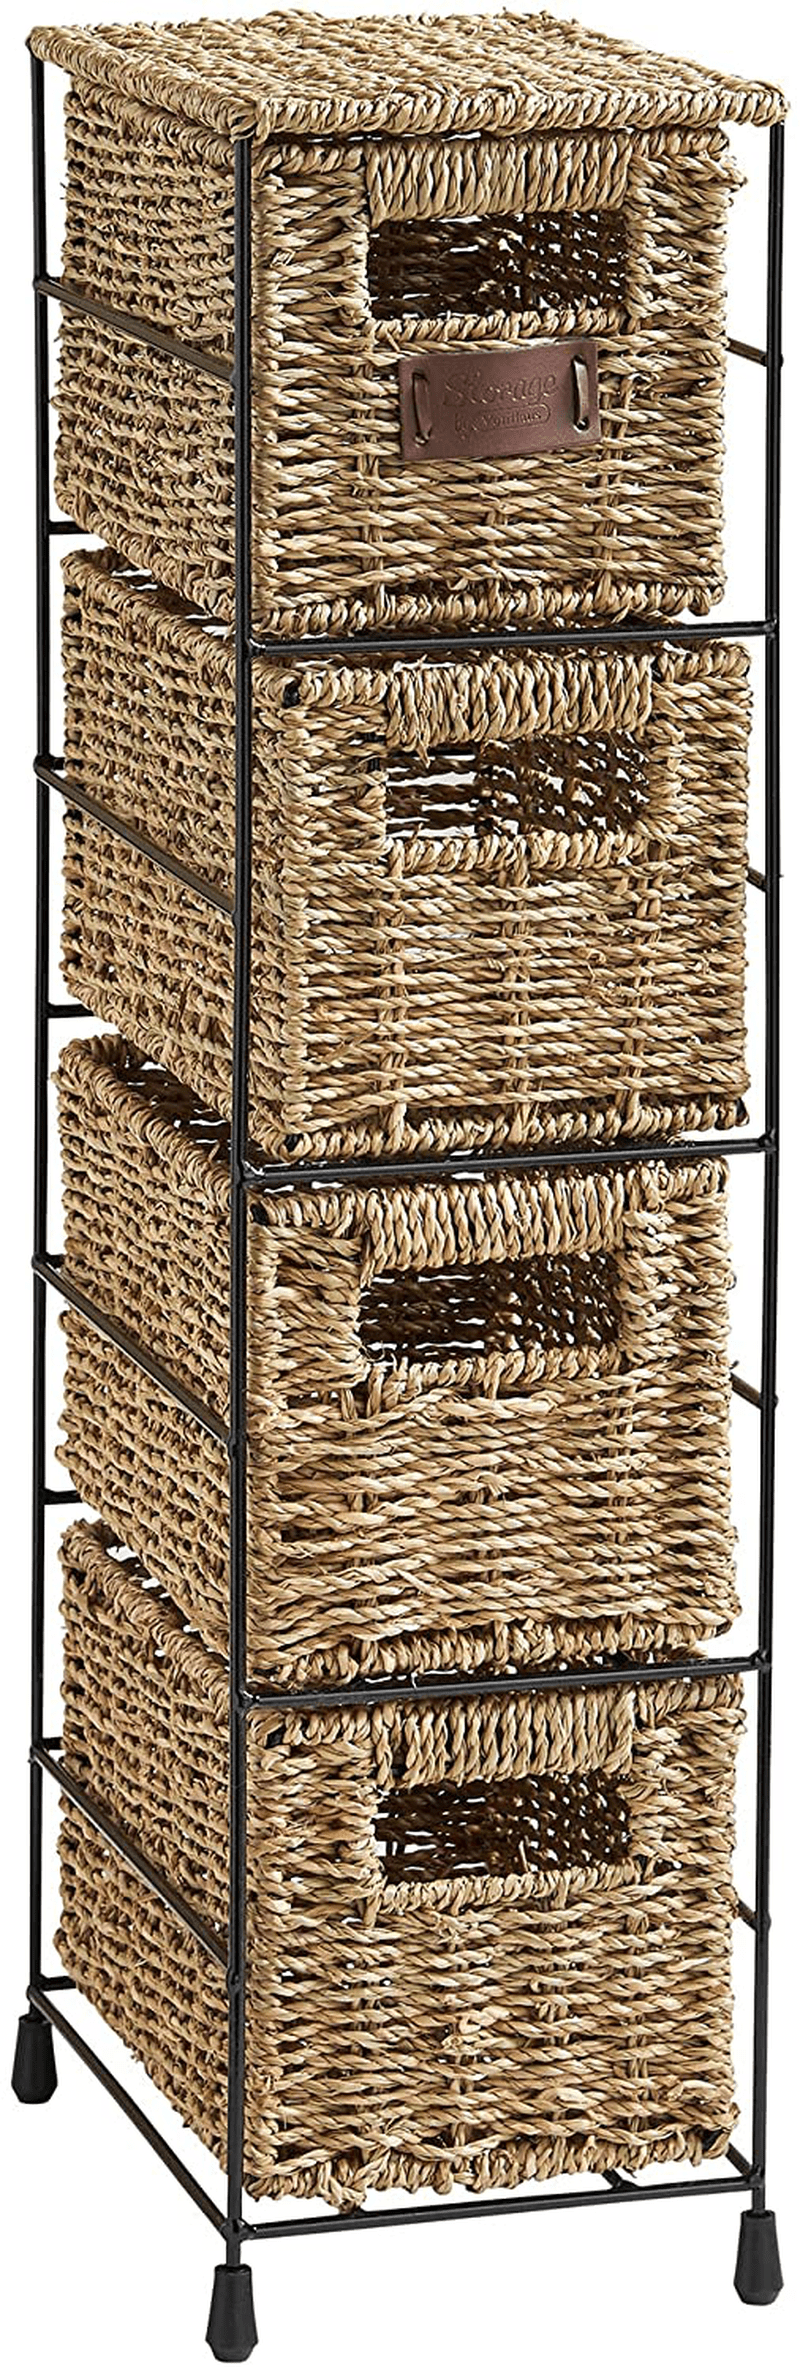 VonHaus 4 Tier Small Seagrass Basket Storage Tower Unit with Metal Frame - Ideal for Small Bathrooms & Home Storage (25.4 x 9.5 x 6.7) Home & Garden > Household Supplies > Storage & Organization VonHaus Default Title  